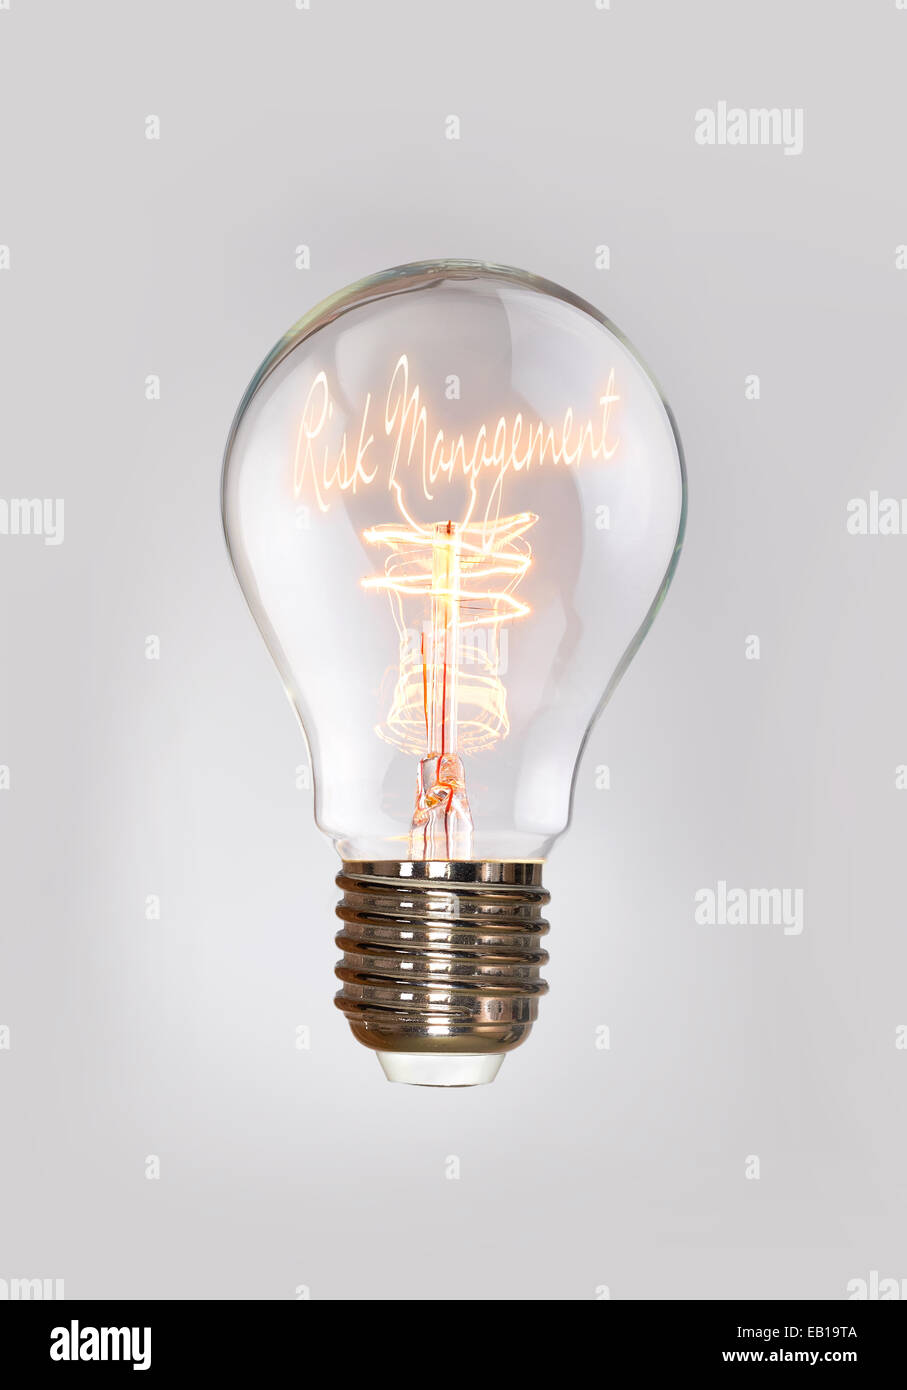 La gestione del rischio in un concetto di lampadine a filamento. Foto Stock